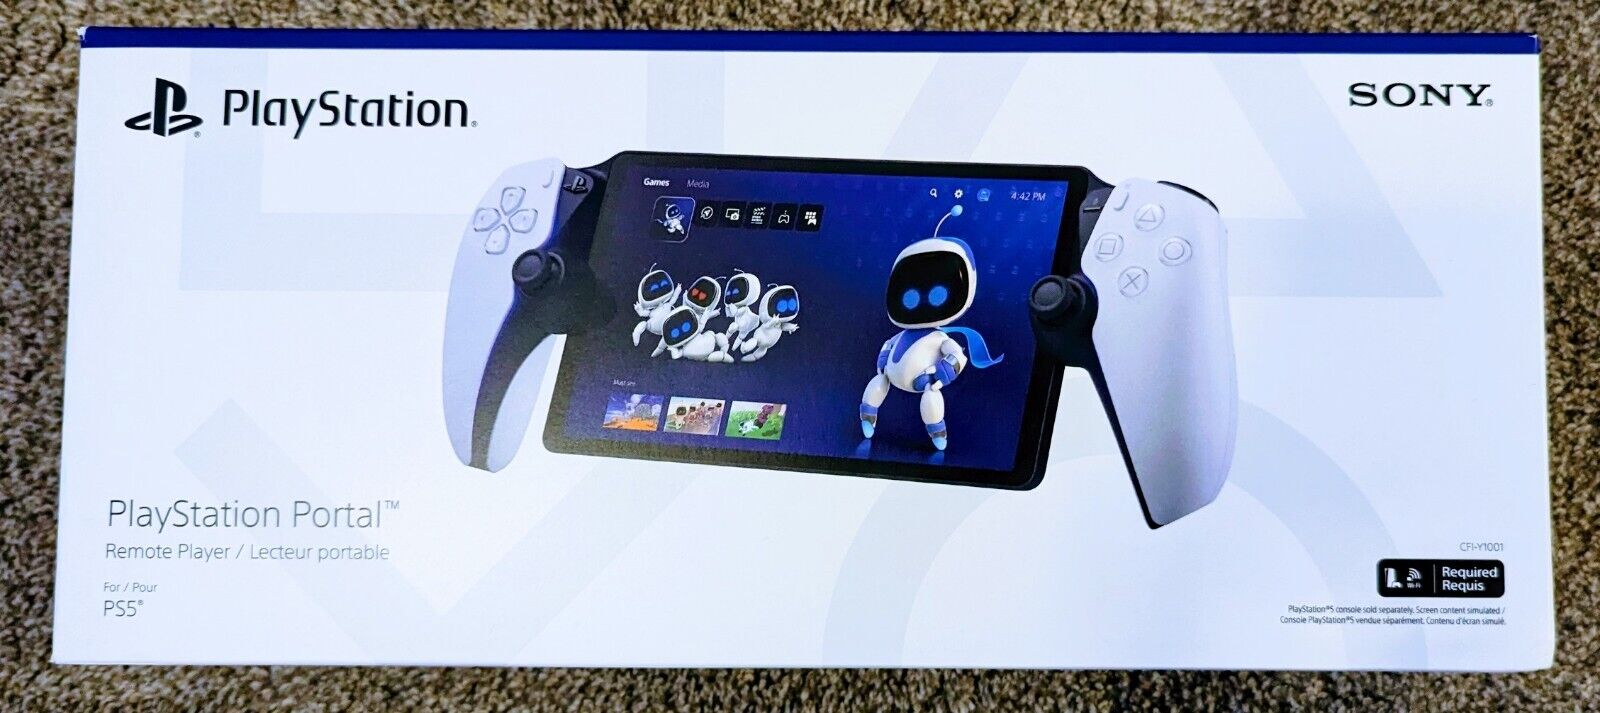 ¡EN MANO! Controlador Remoto PlayStation Portal para Consola PS5 ¡Sellado!¡!